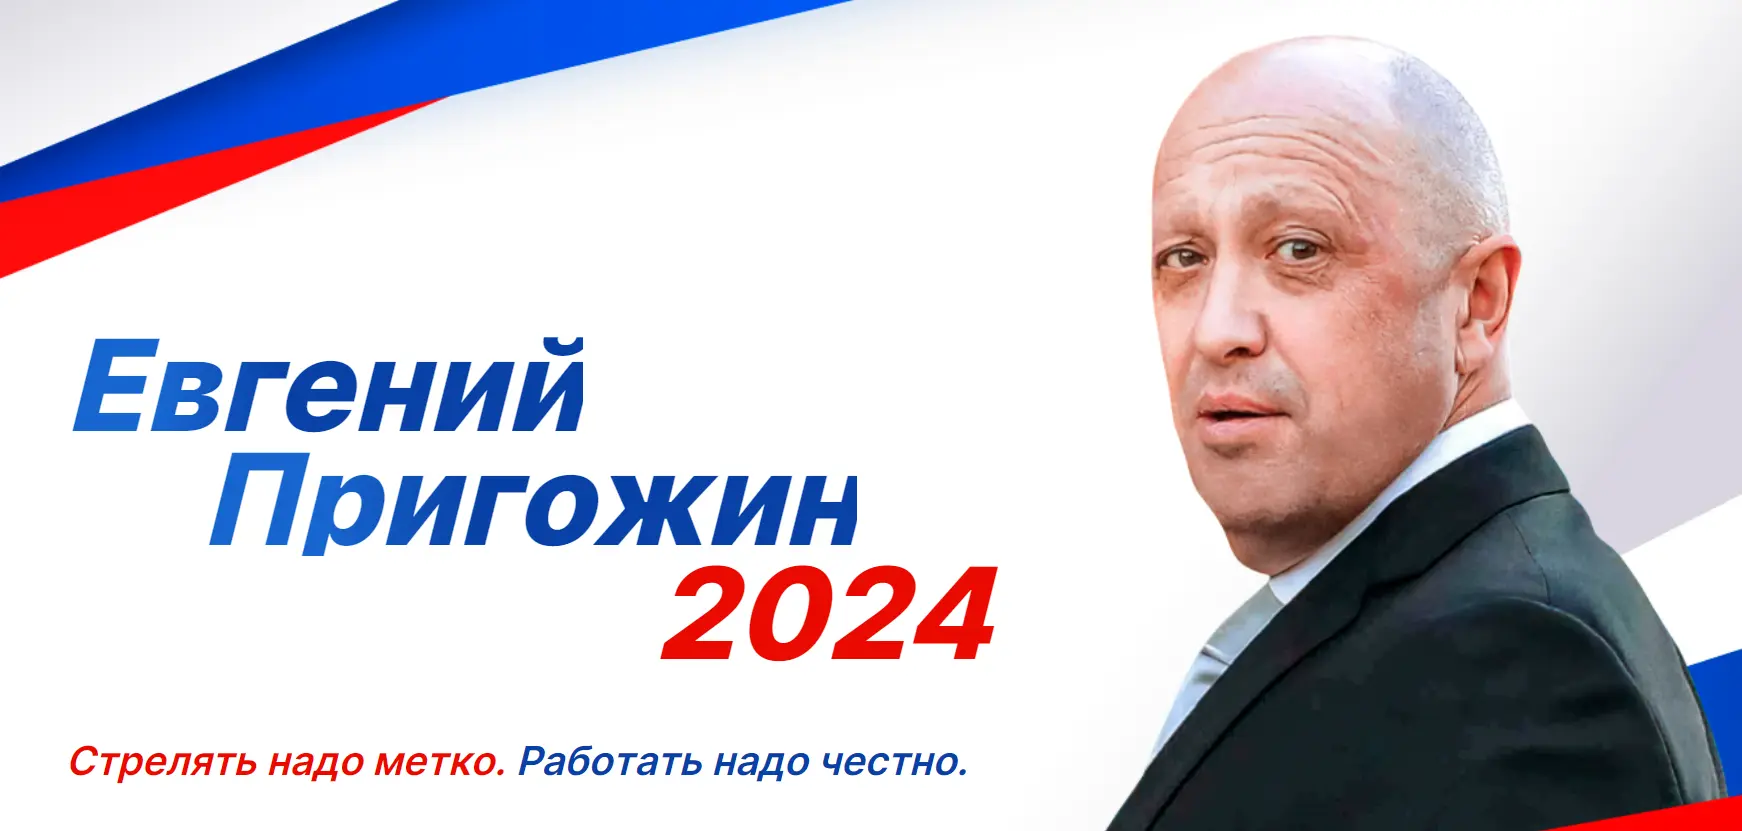 Выборы 2024 брянская область. Пригожин 2024 выборы плакат. Vibori rossii 2024. Предвыборные плакаты 2024.